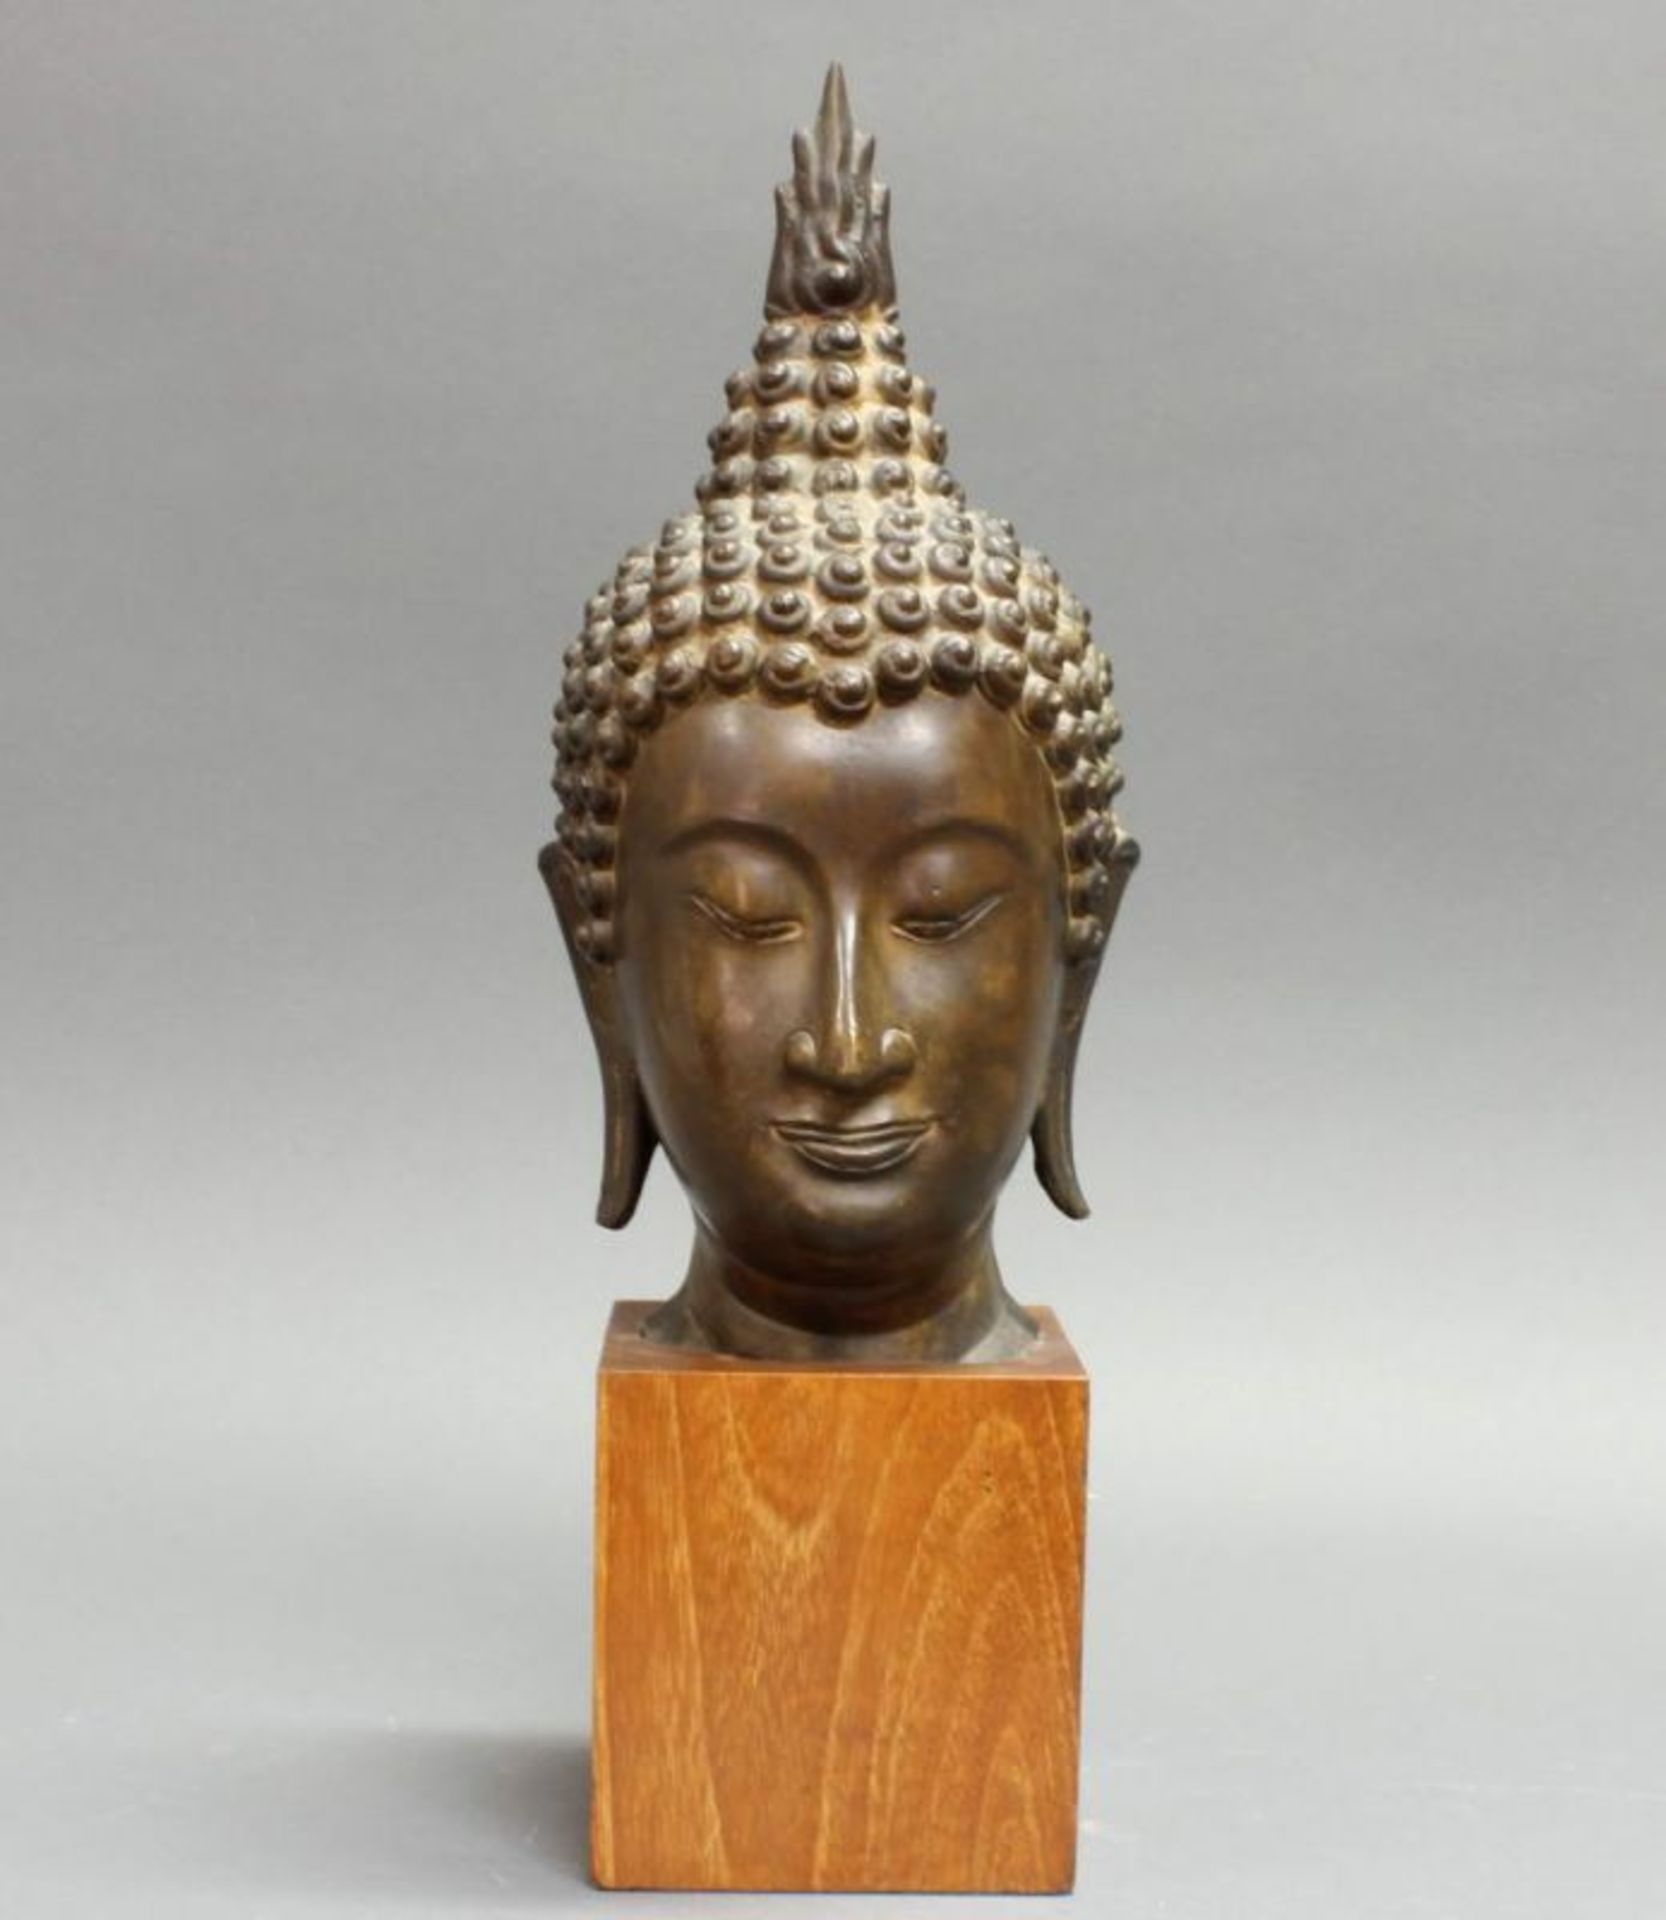 Buddhakopf, Thailand, 20. Jh., Bronze, auf Holzsockel, 31 cm bzw. 42 cm hoch (mit Sockel), kleine